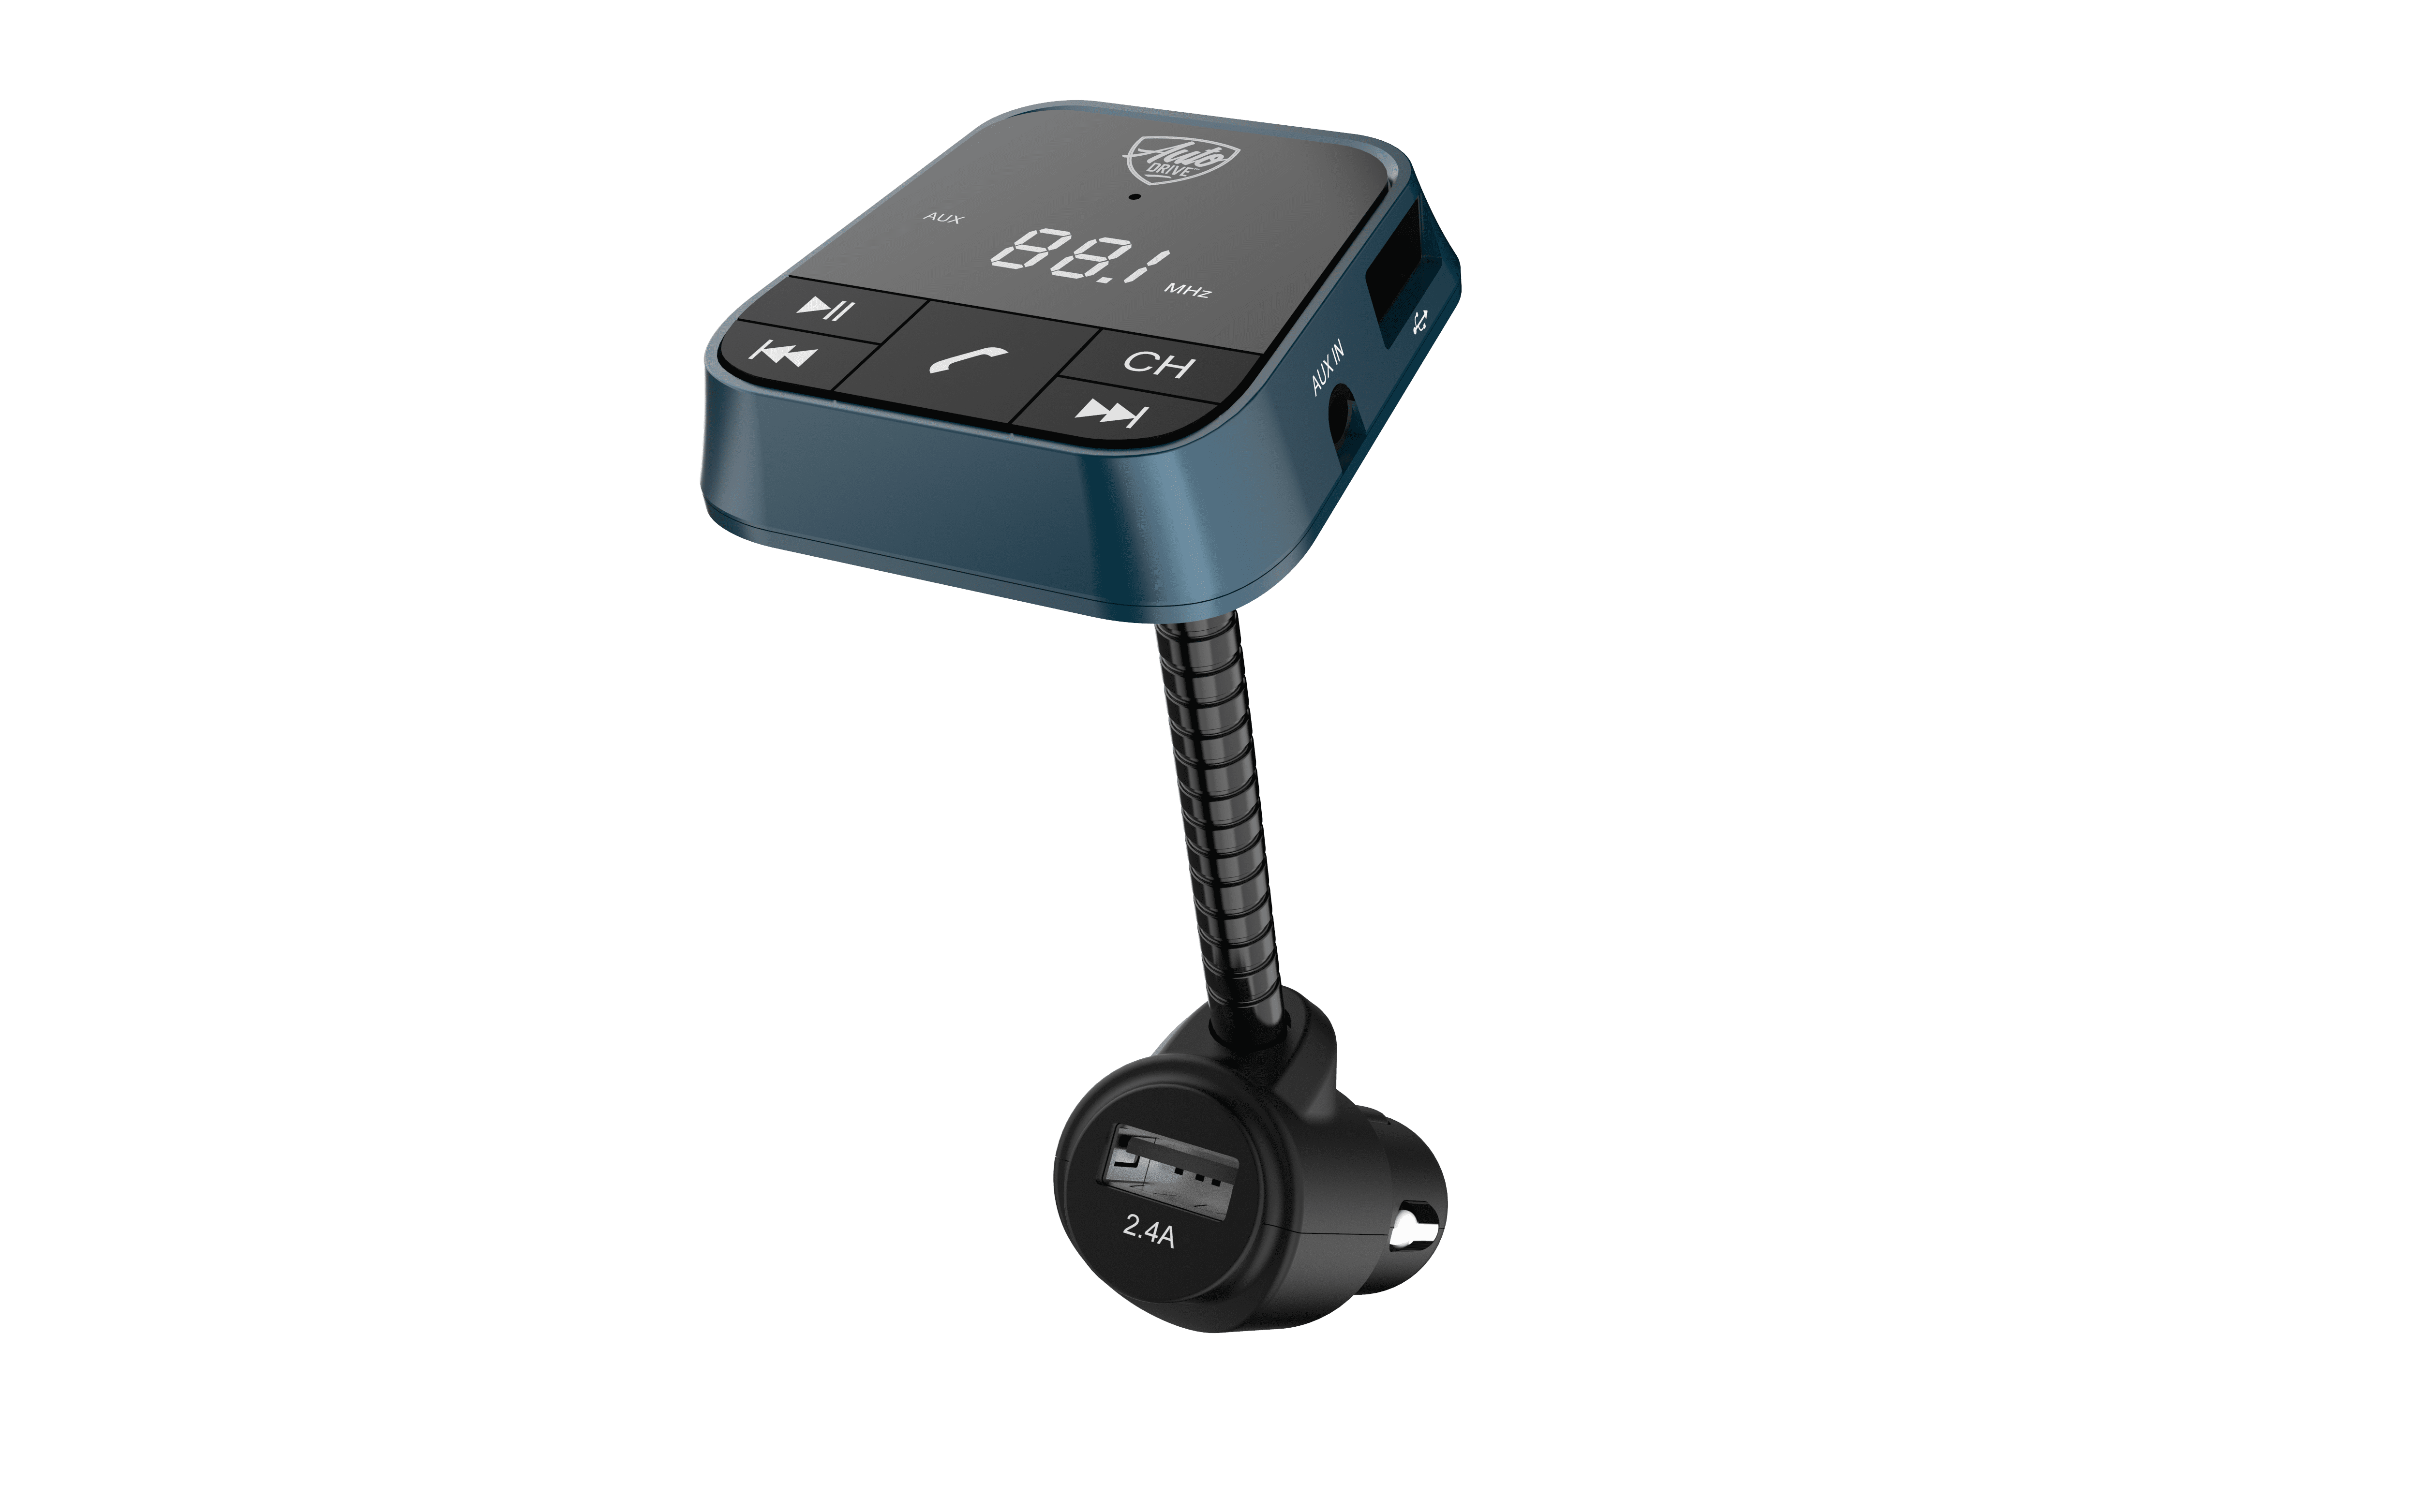 Verleiden Gemeenten Begrijpen Auto Drive Gooseneck Bluetooth FM Transmitter, Dual USB Charging Ports,  Compatible with Smartphones - Walmart.com